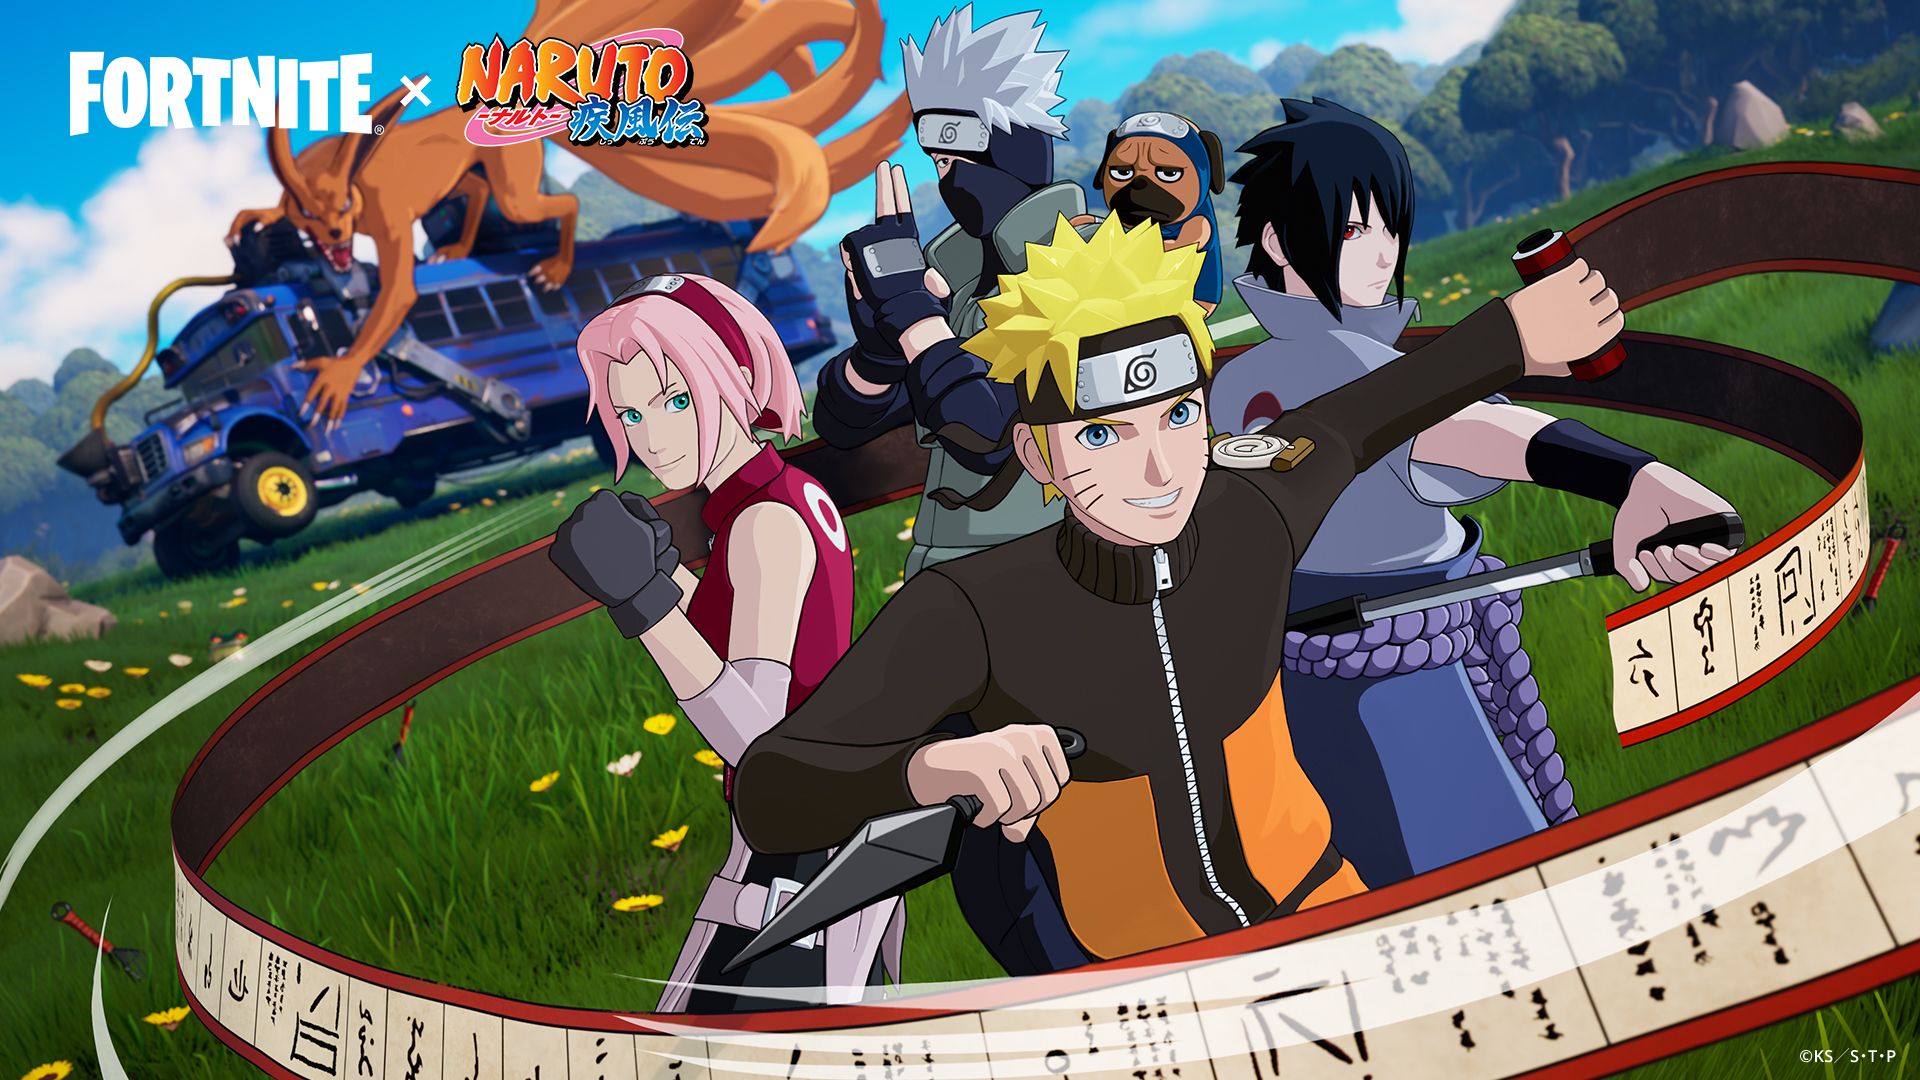 Fortnite v18.40 adds Naruto, Sasuke, Sakura, and Kakashi skins